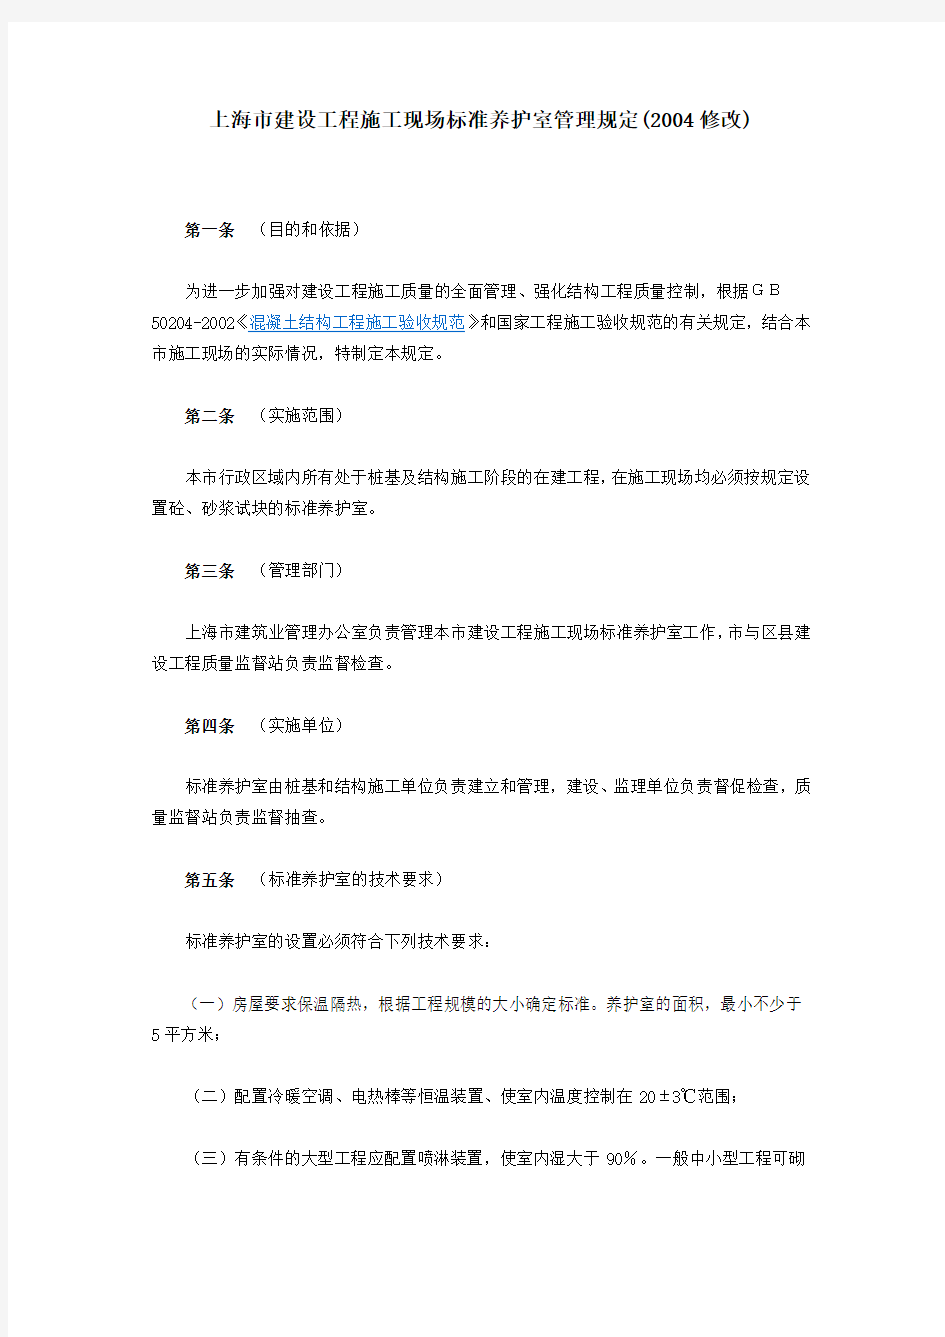 上海市建设工程施工现场标准养护室管理规定